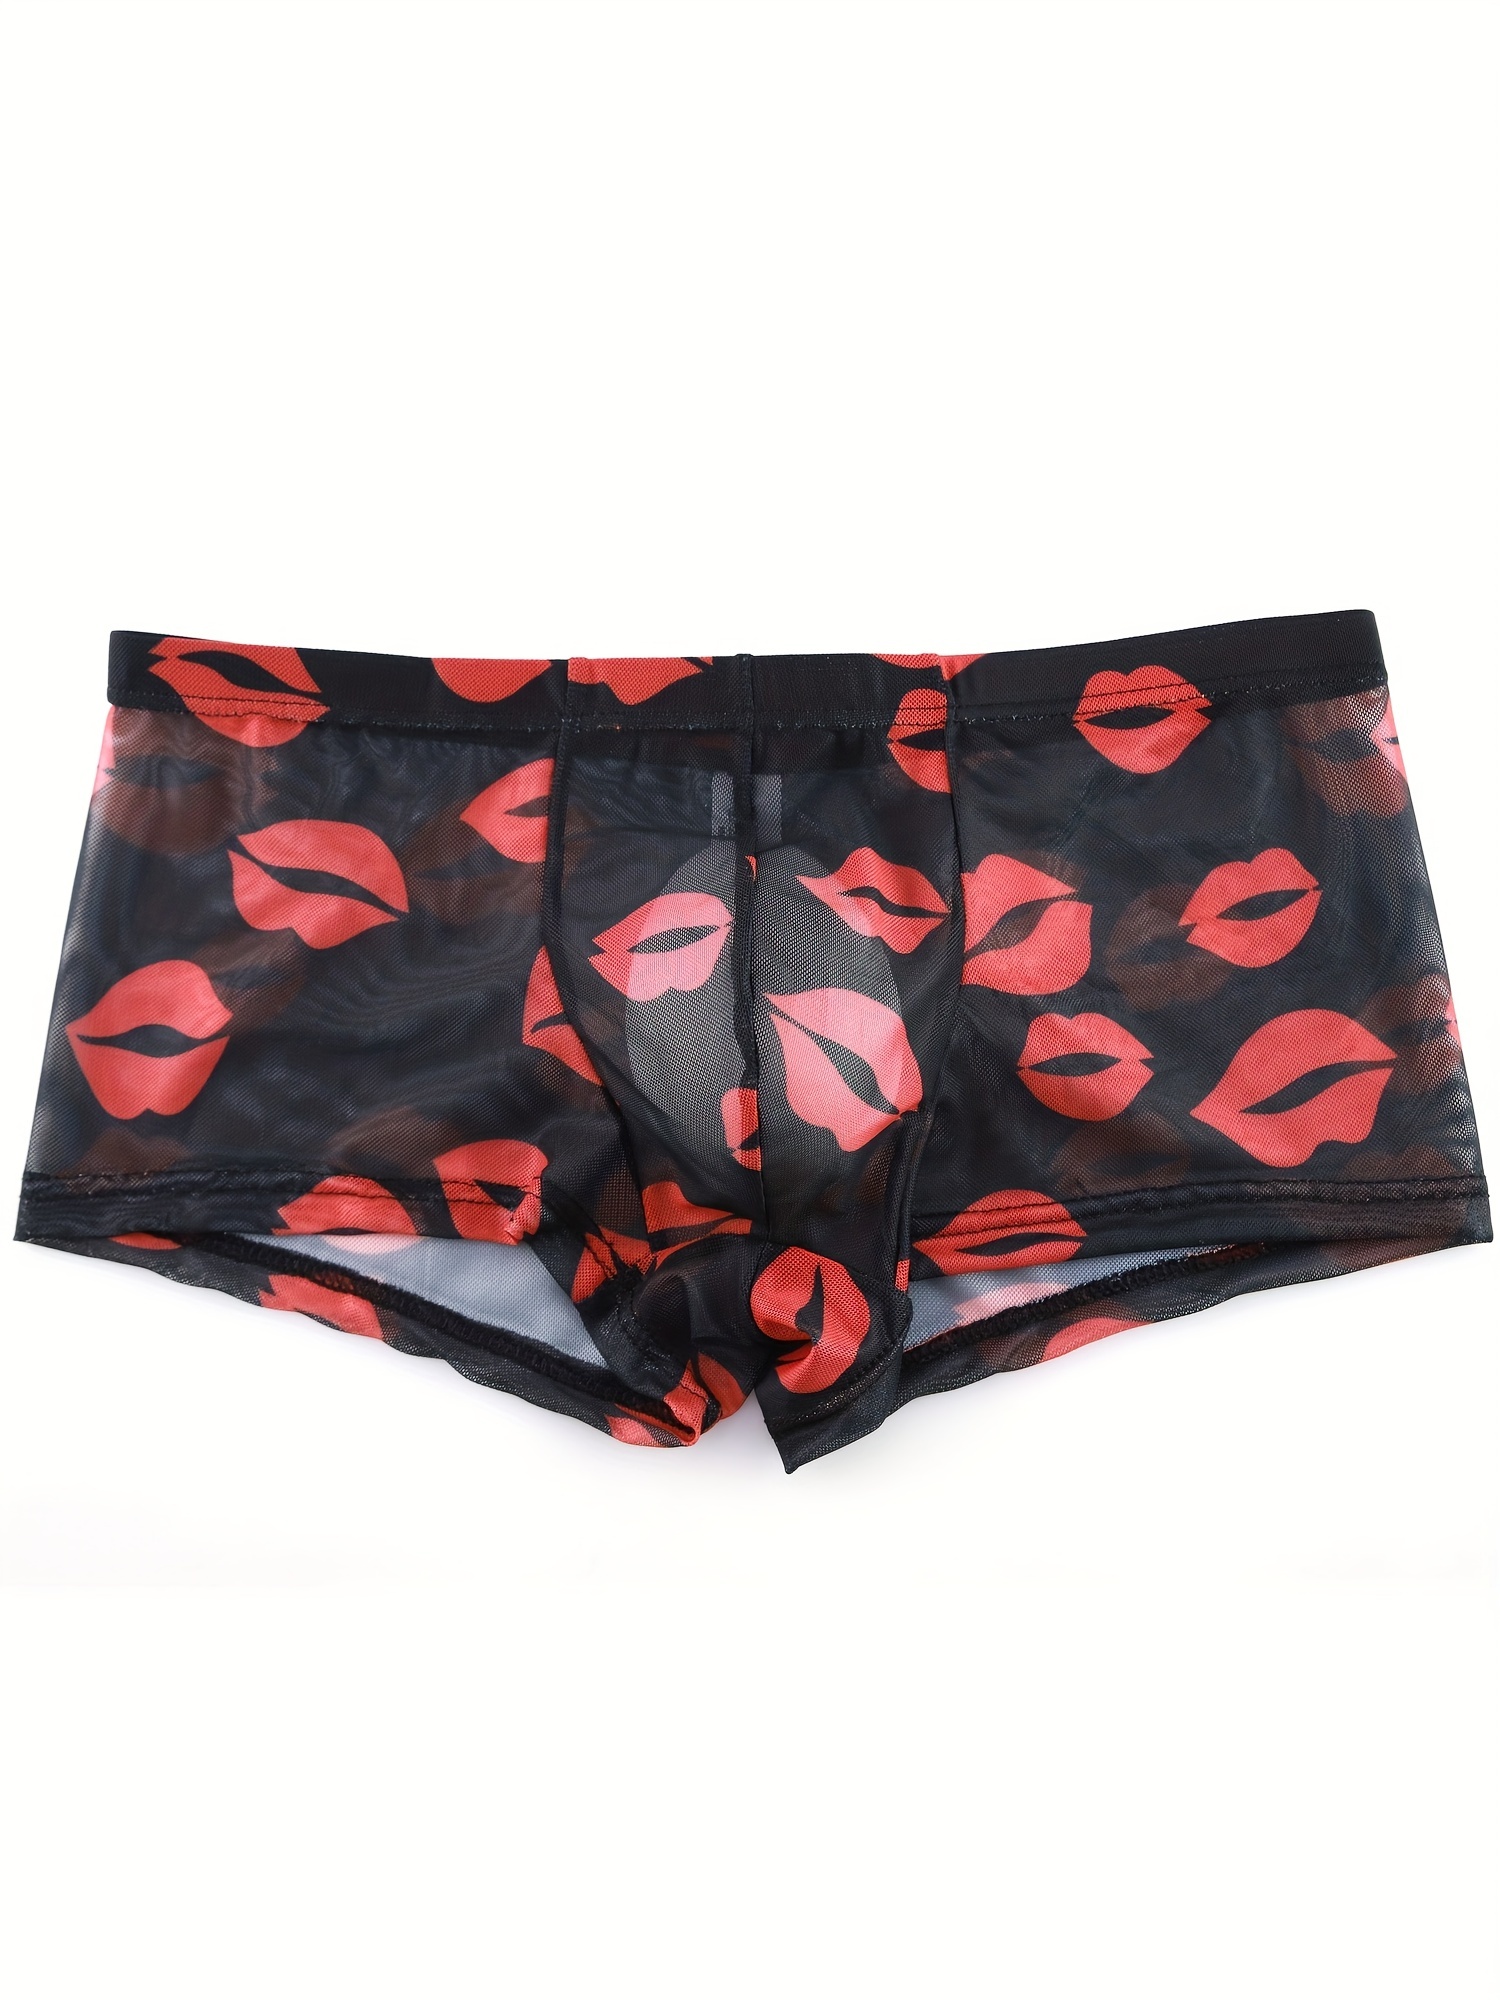 PMUYBHF Underwear Men Boxer Men's Valentine's Day Underwear Love Heart  Printed underpants Men's Thong Underwear Christmas